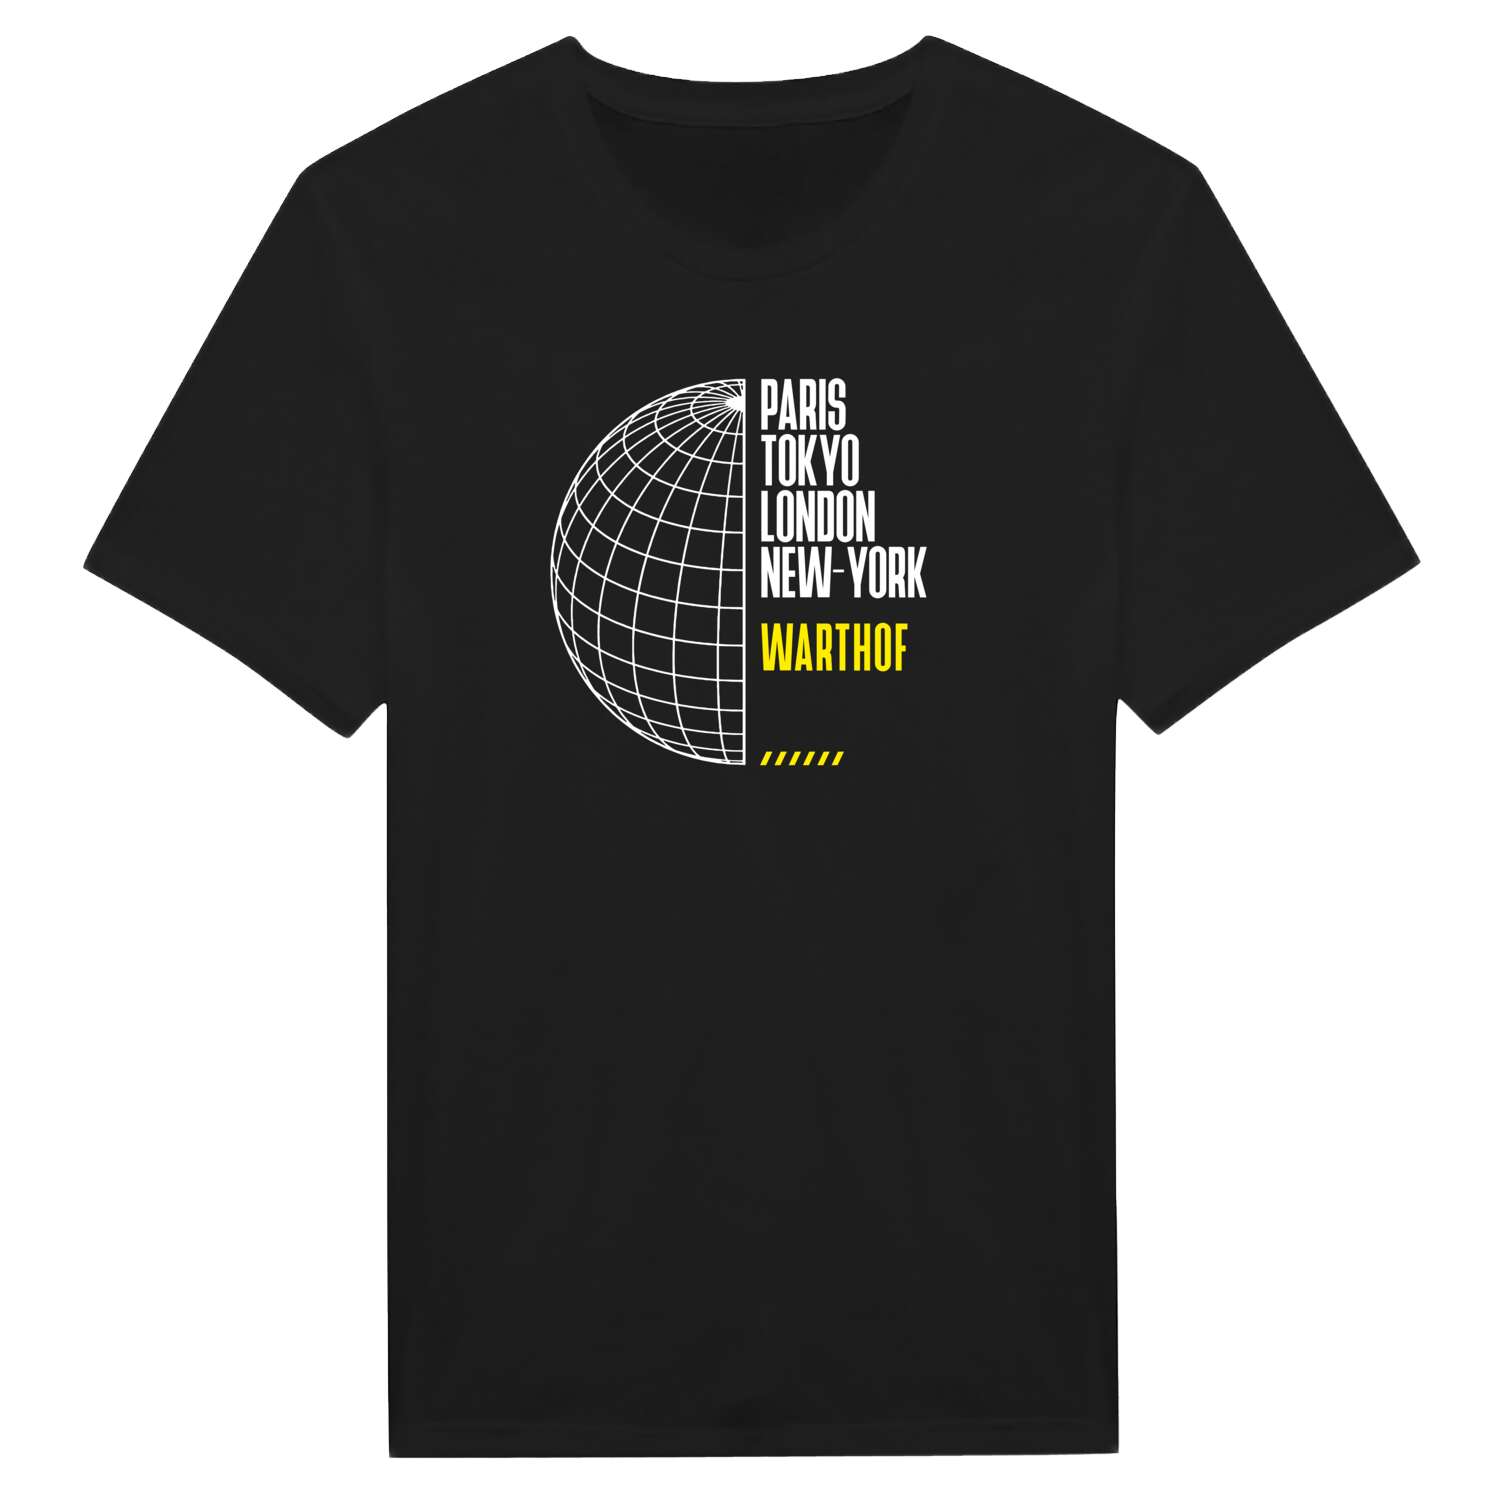 Warthof T-Shirt »Paris Tokyo London«